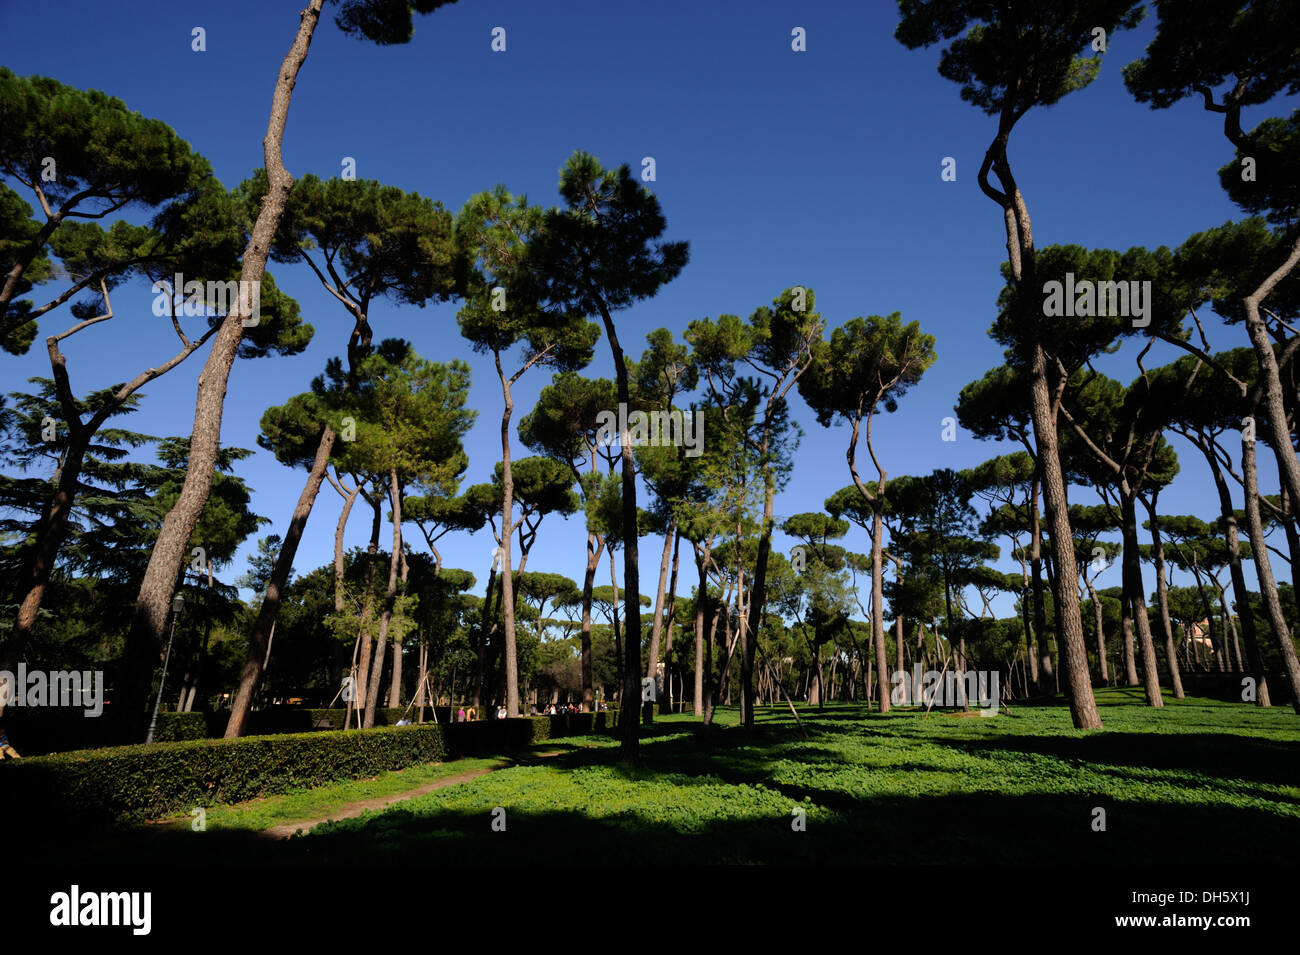 italy, rome, villa borghese, pine trees Stock Photo